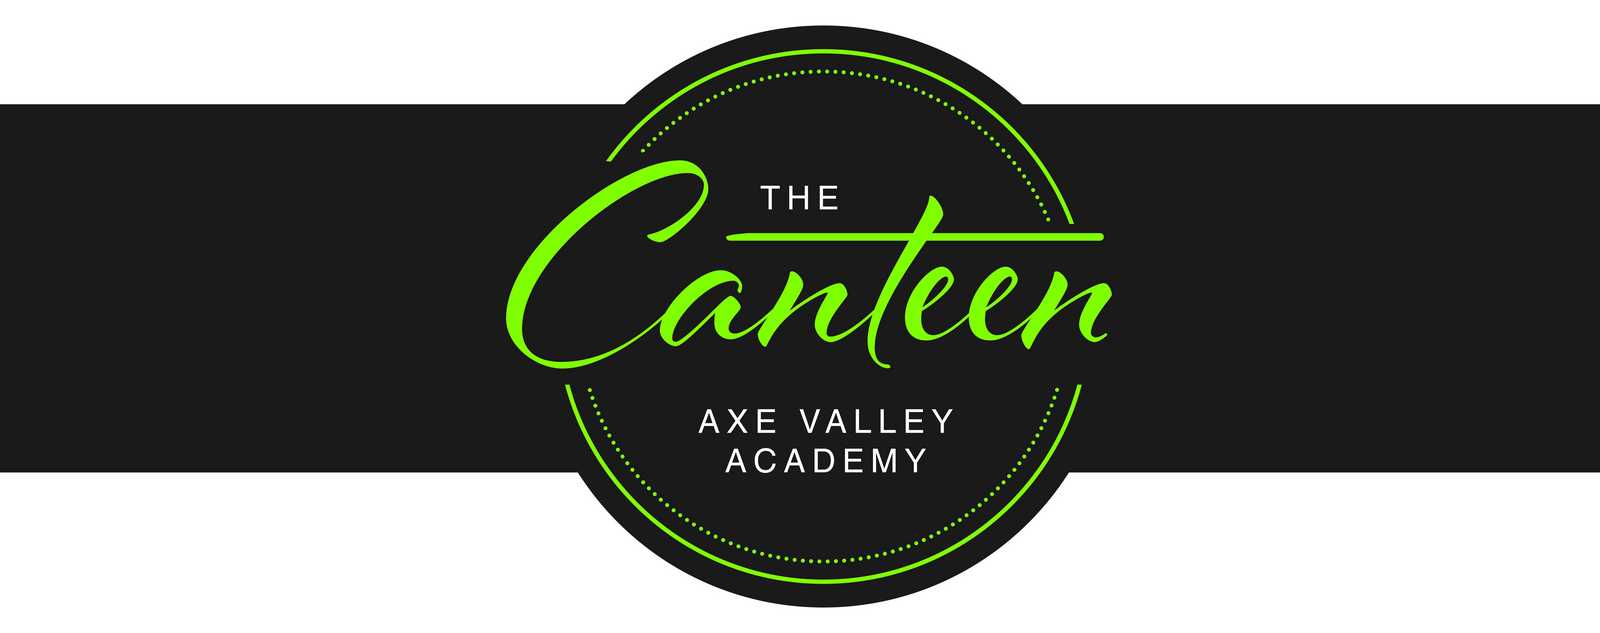 Logo Design for Axe Valley Academy